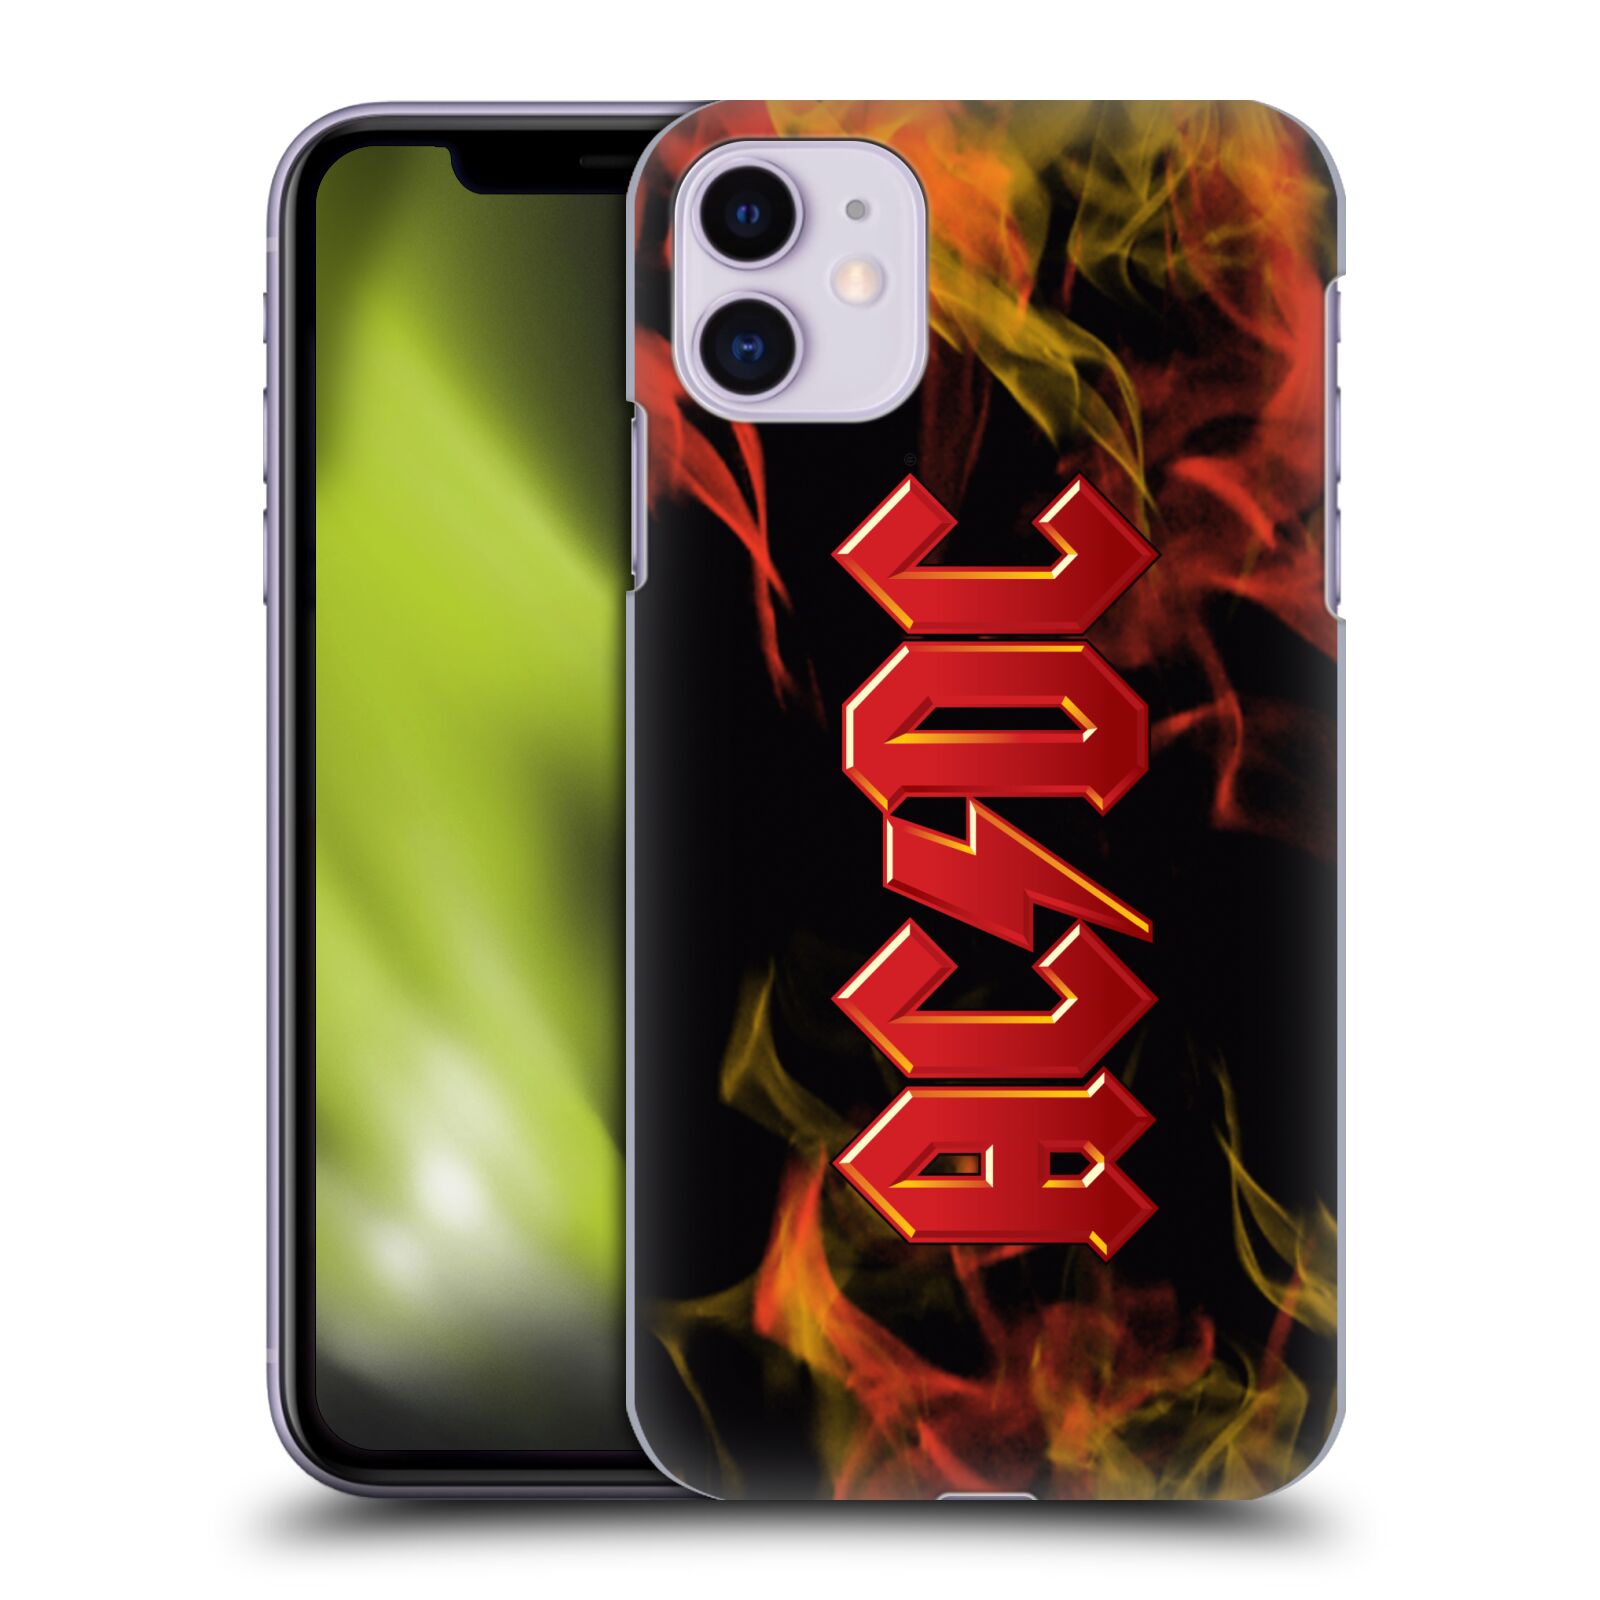 Pouzdro na mobil Apple Iphone 11 - HEAD CASE - rocková skupina ACDC logo plameny